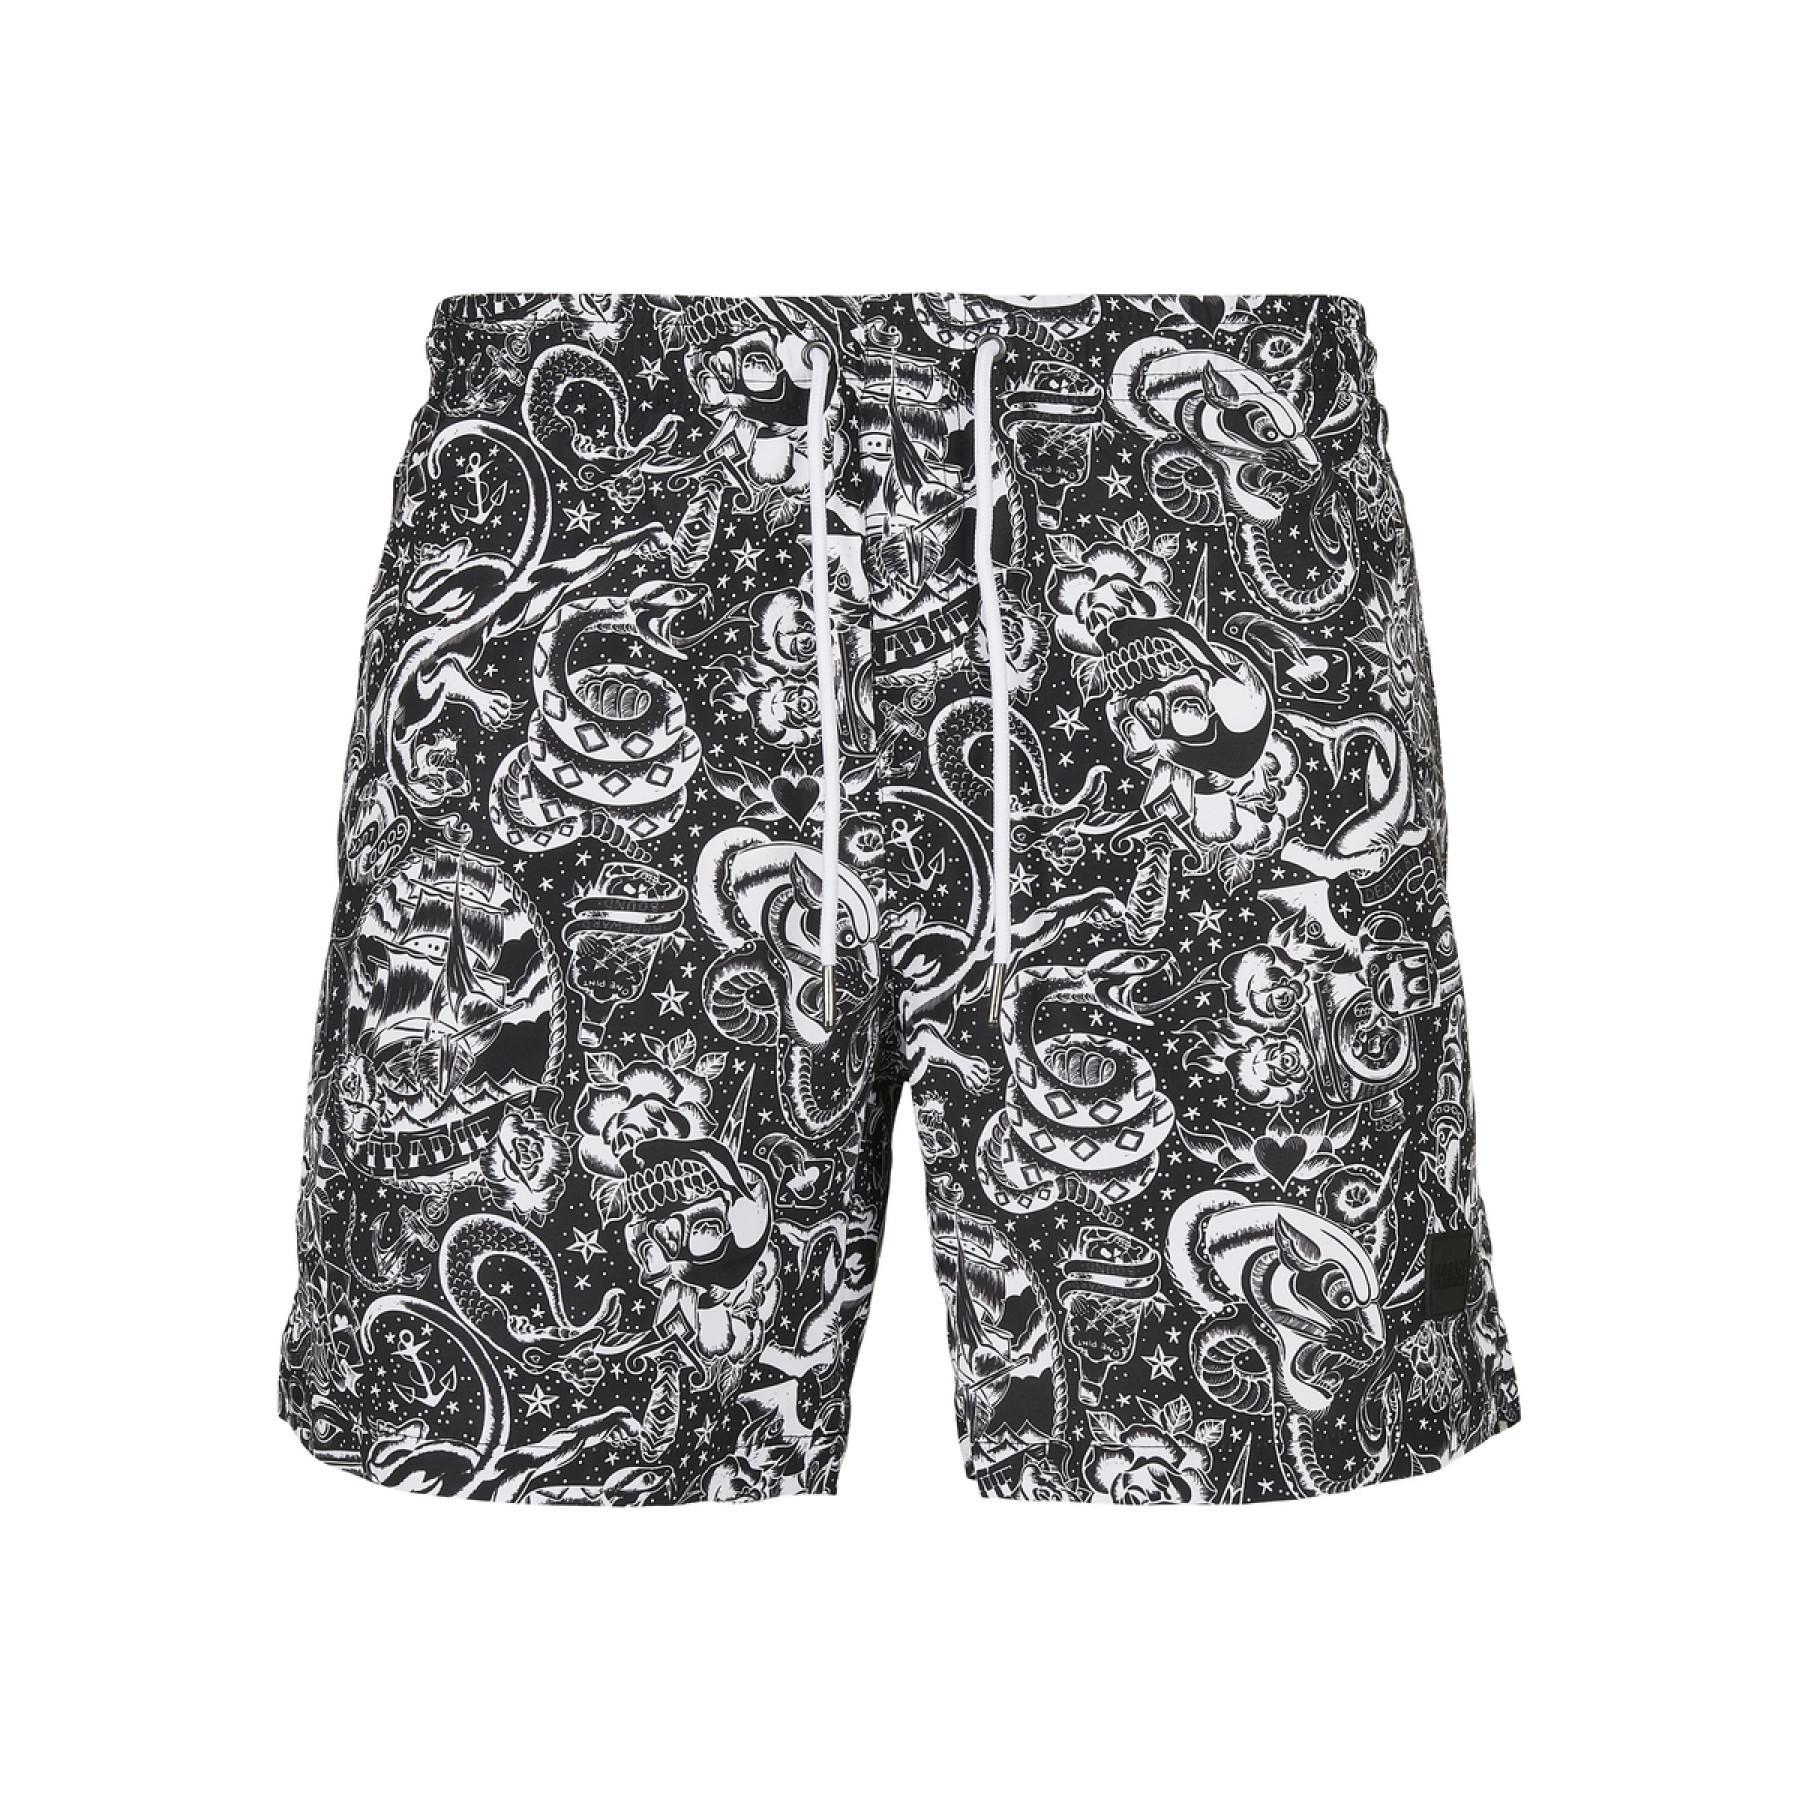 Swim shorts Urban Classics pattern